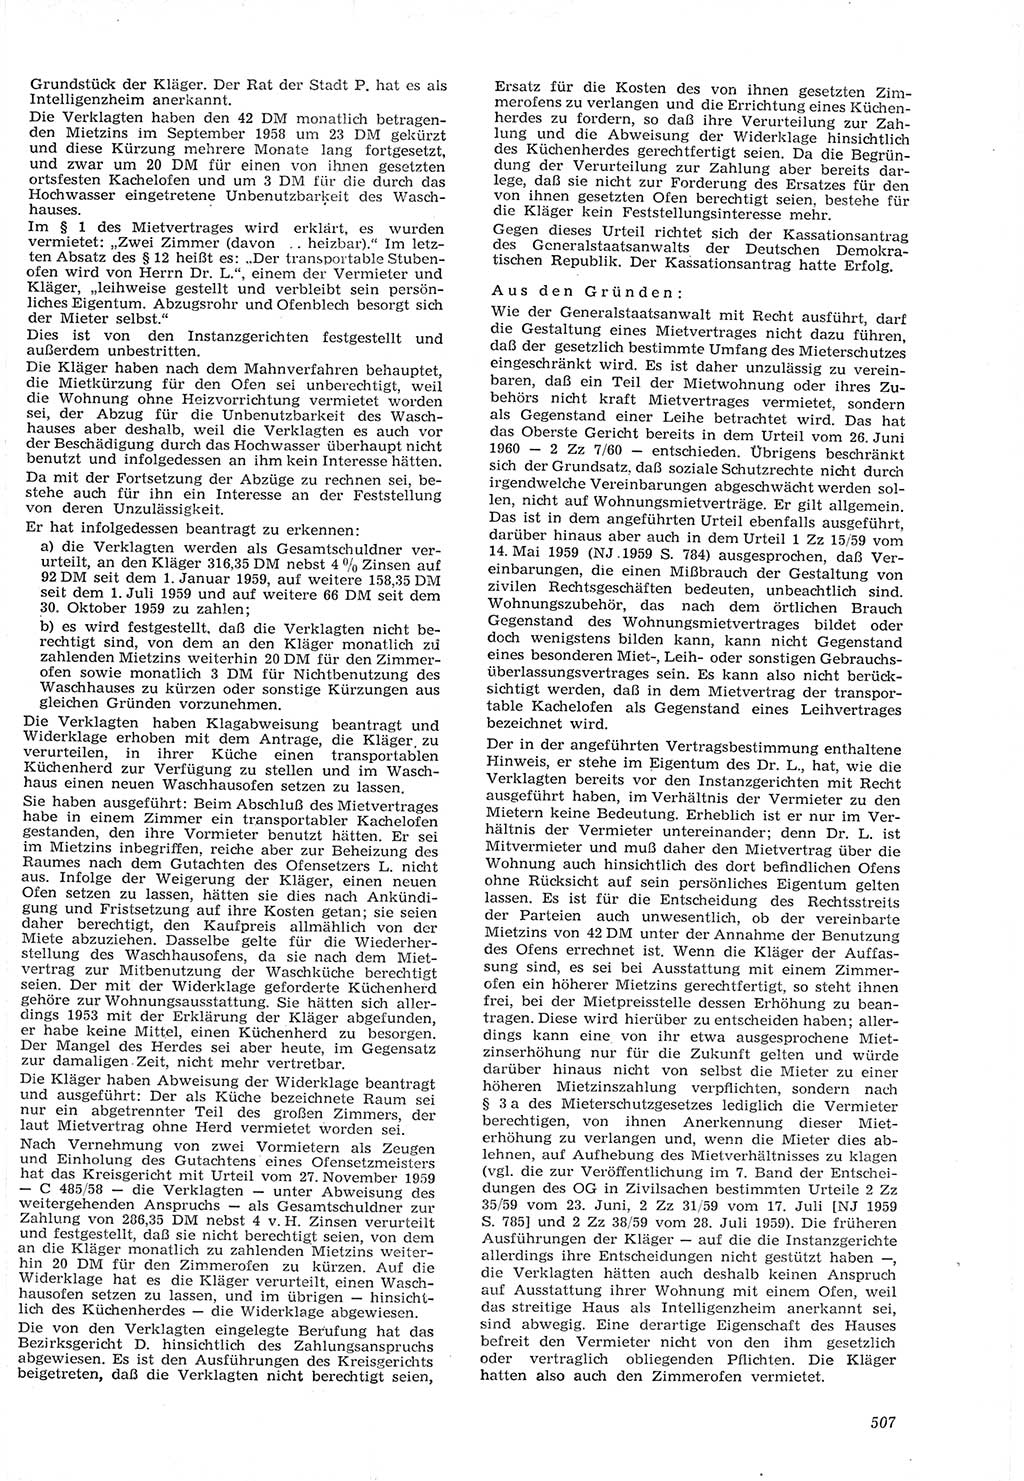 Neue Justiz (NJ), Zeitschrift für Recht und Rechtswissenschaft [Deutsche Demokratische Republik (DDR)], 15. Jahrgang 1961, Seite 507 (NJ DDR 1961, S. 507)